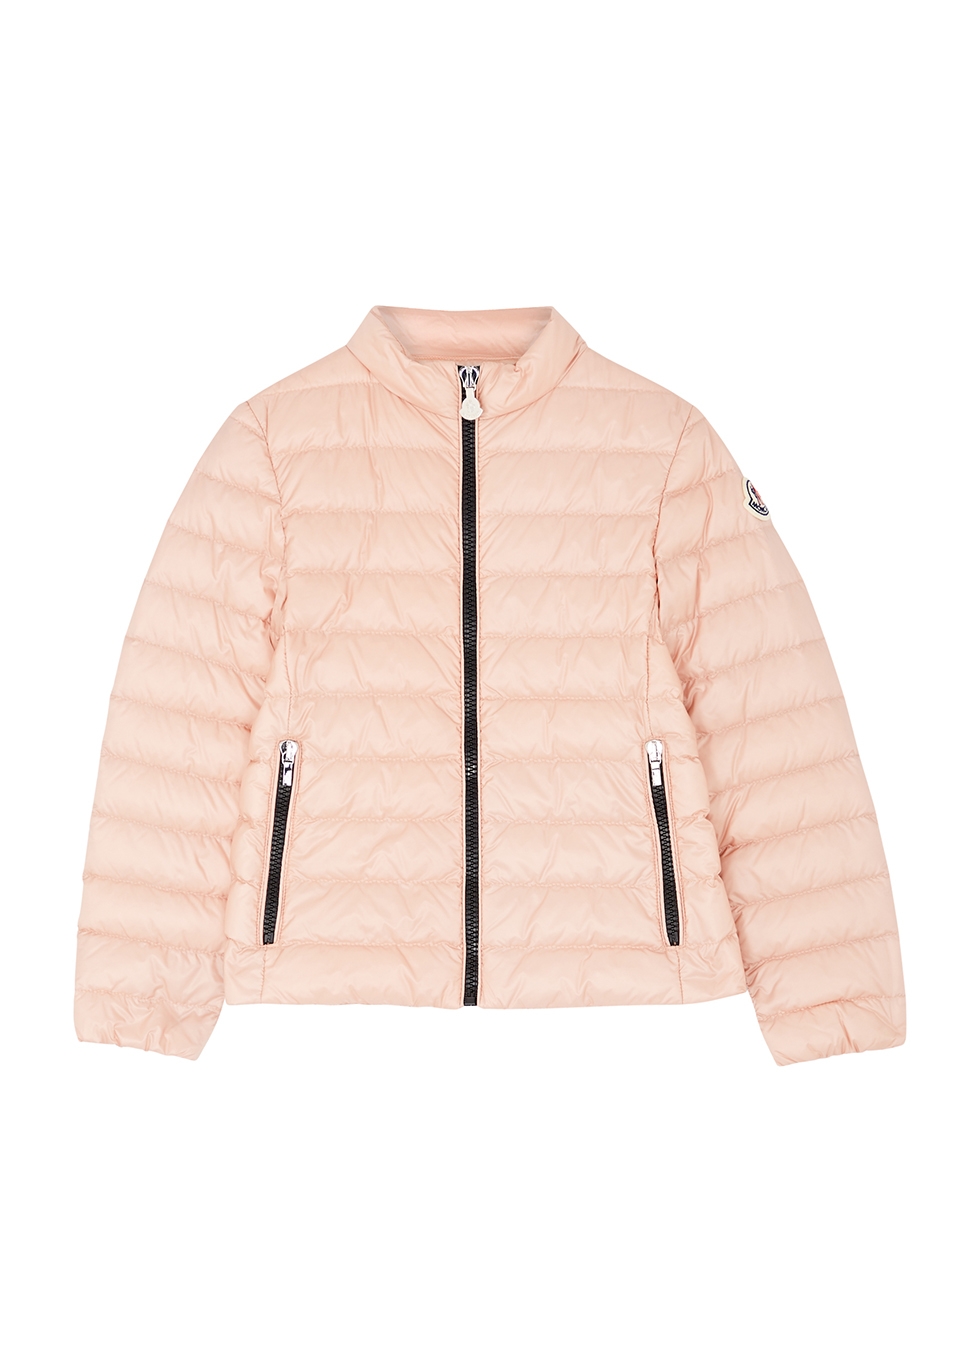 KIDS Kaukura pink quilted shell jacket (8-10 years)